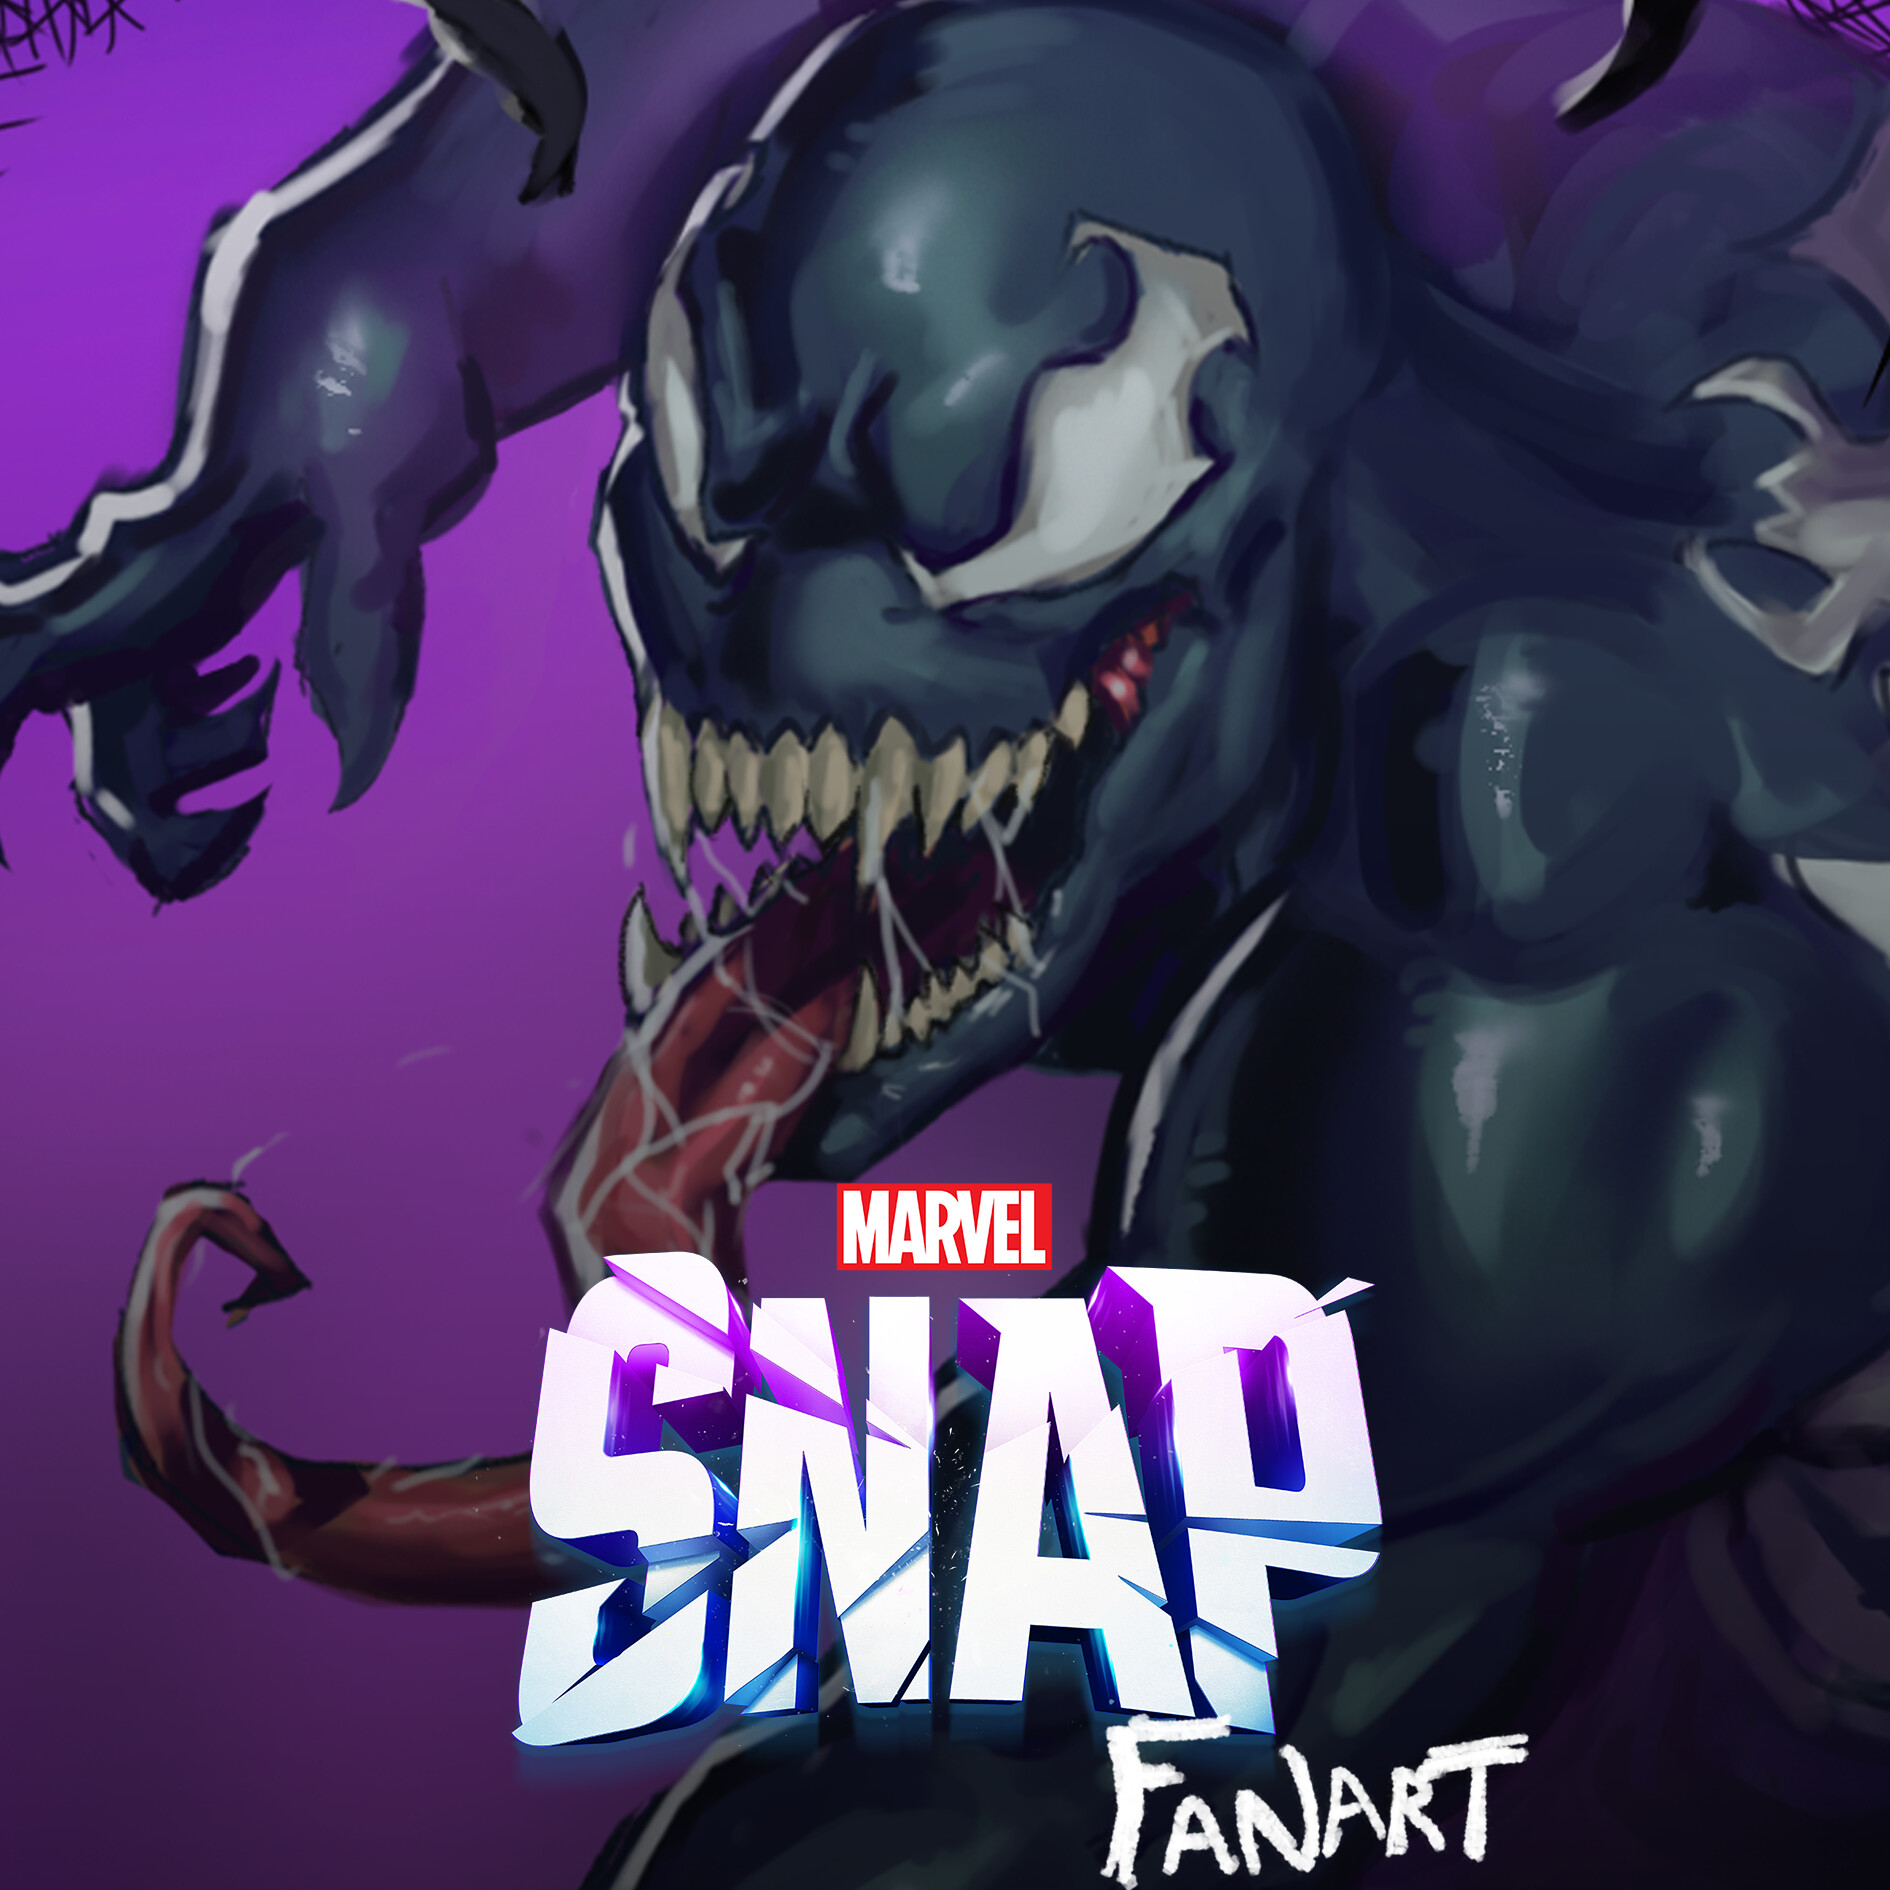 ArtStation - Marvel Snap fan art